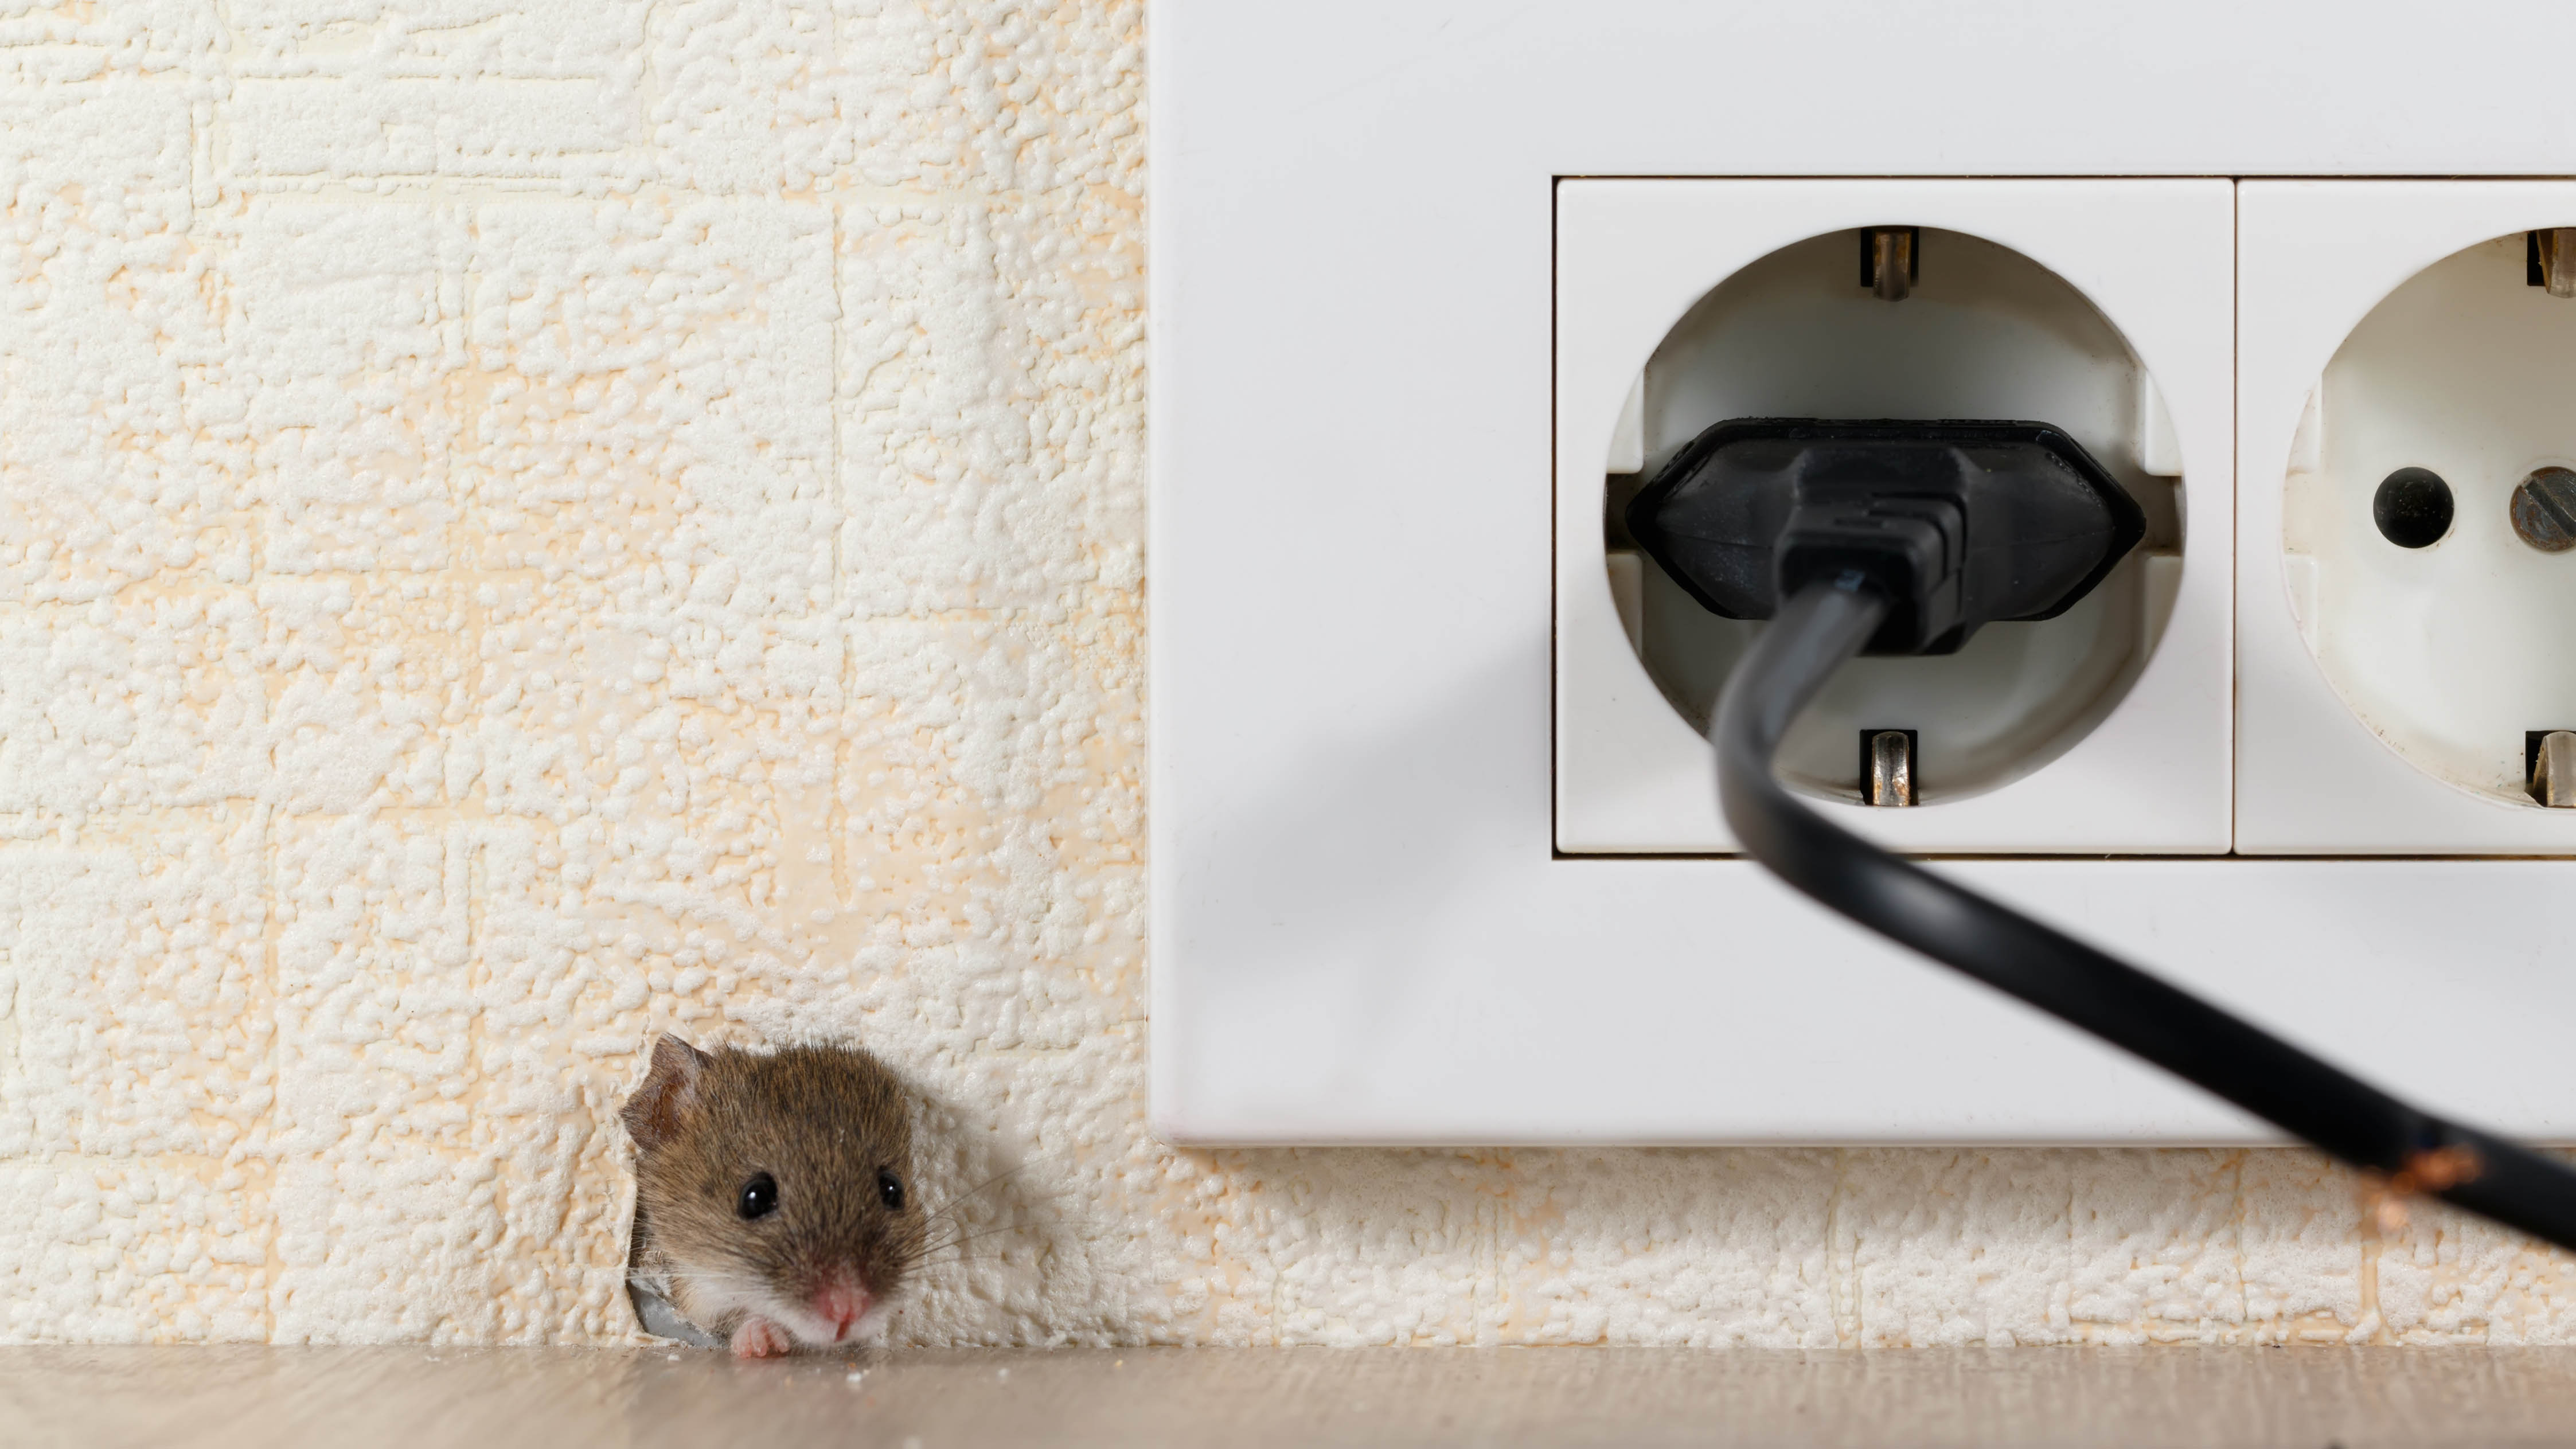 Мышь вылезает из дырки под электрической розеткой